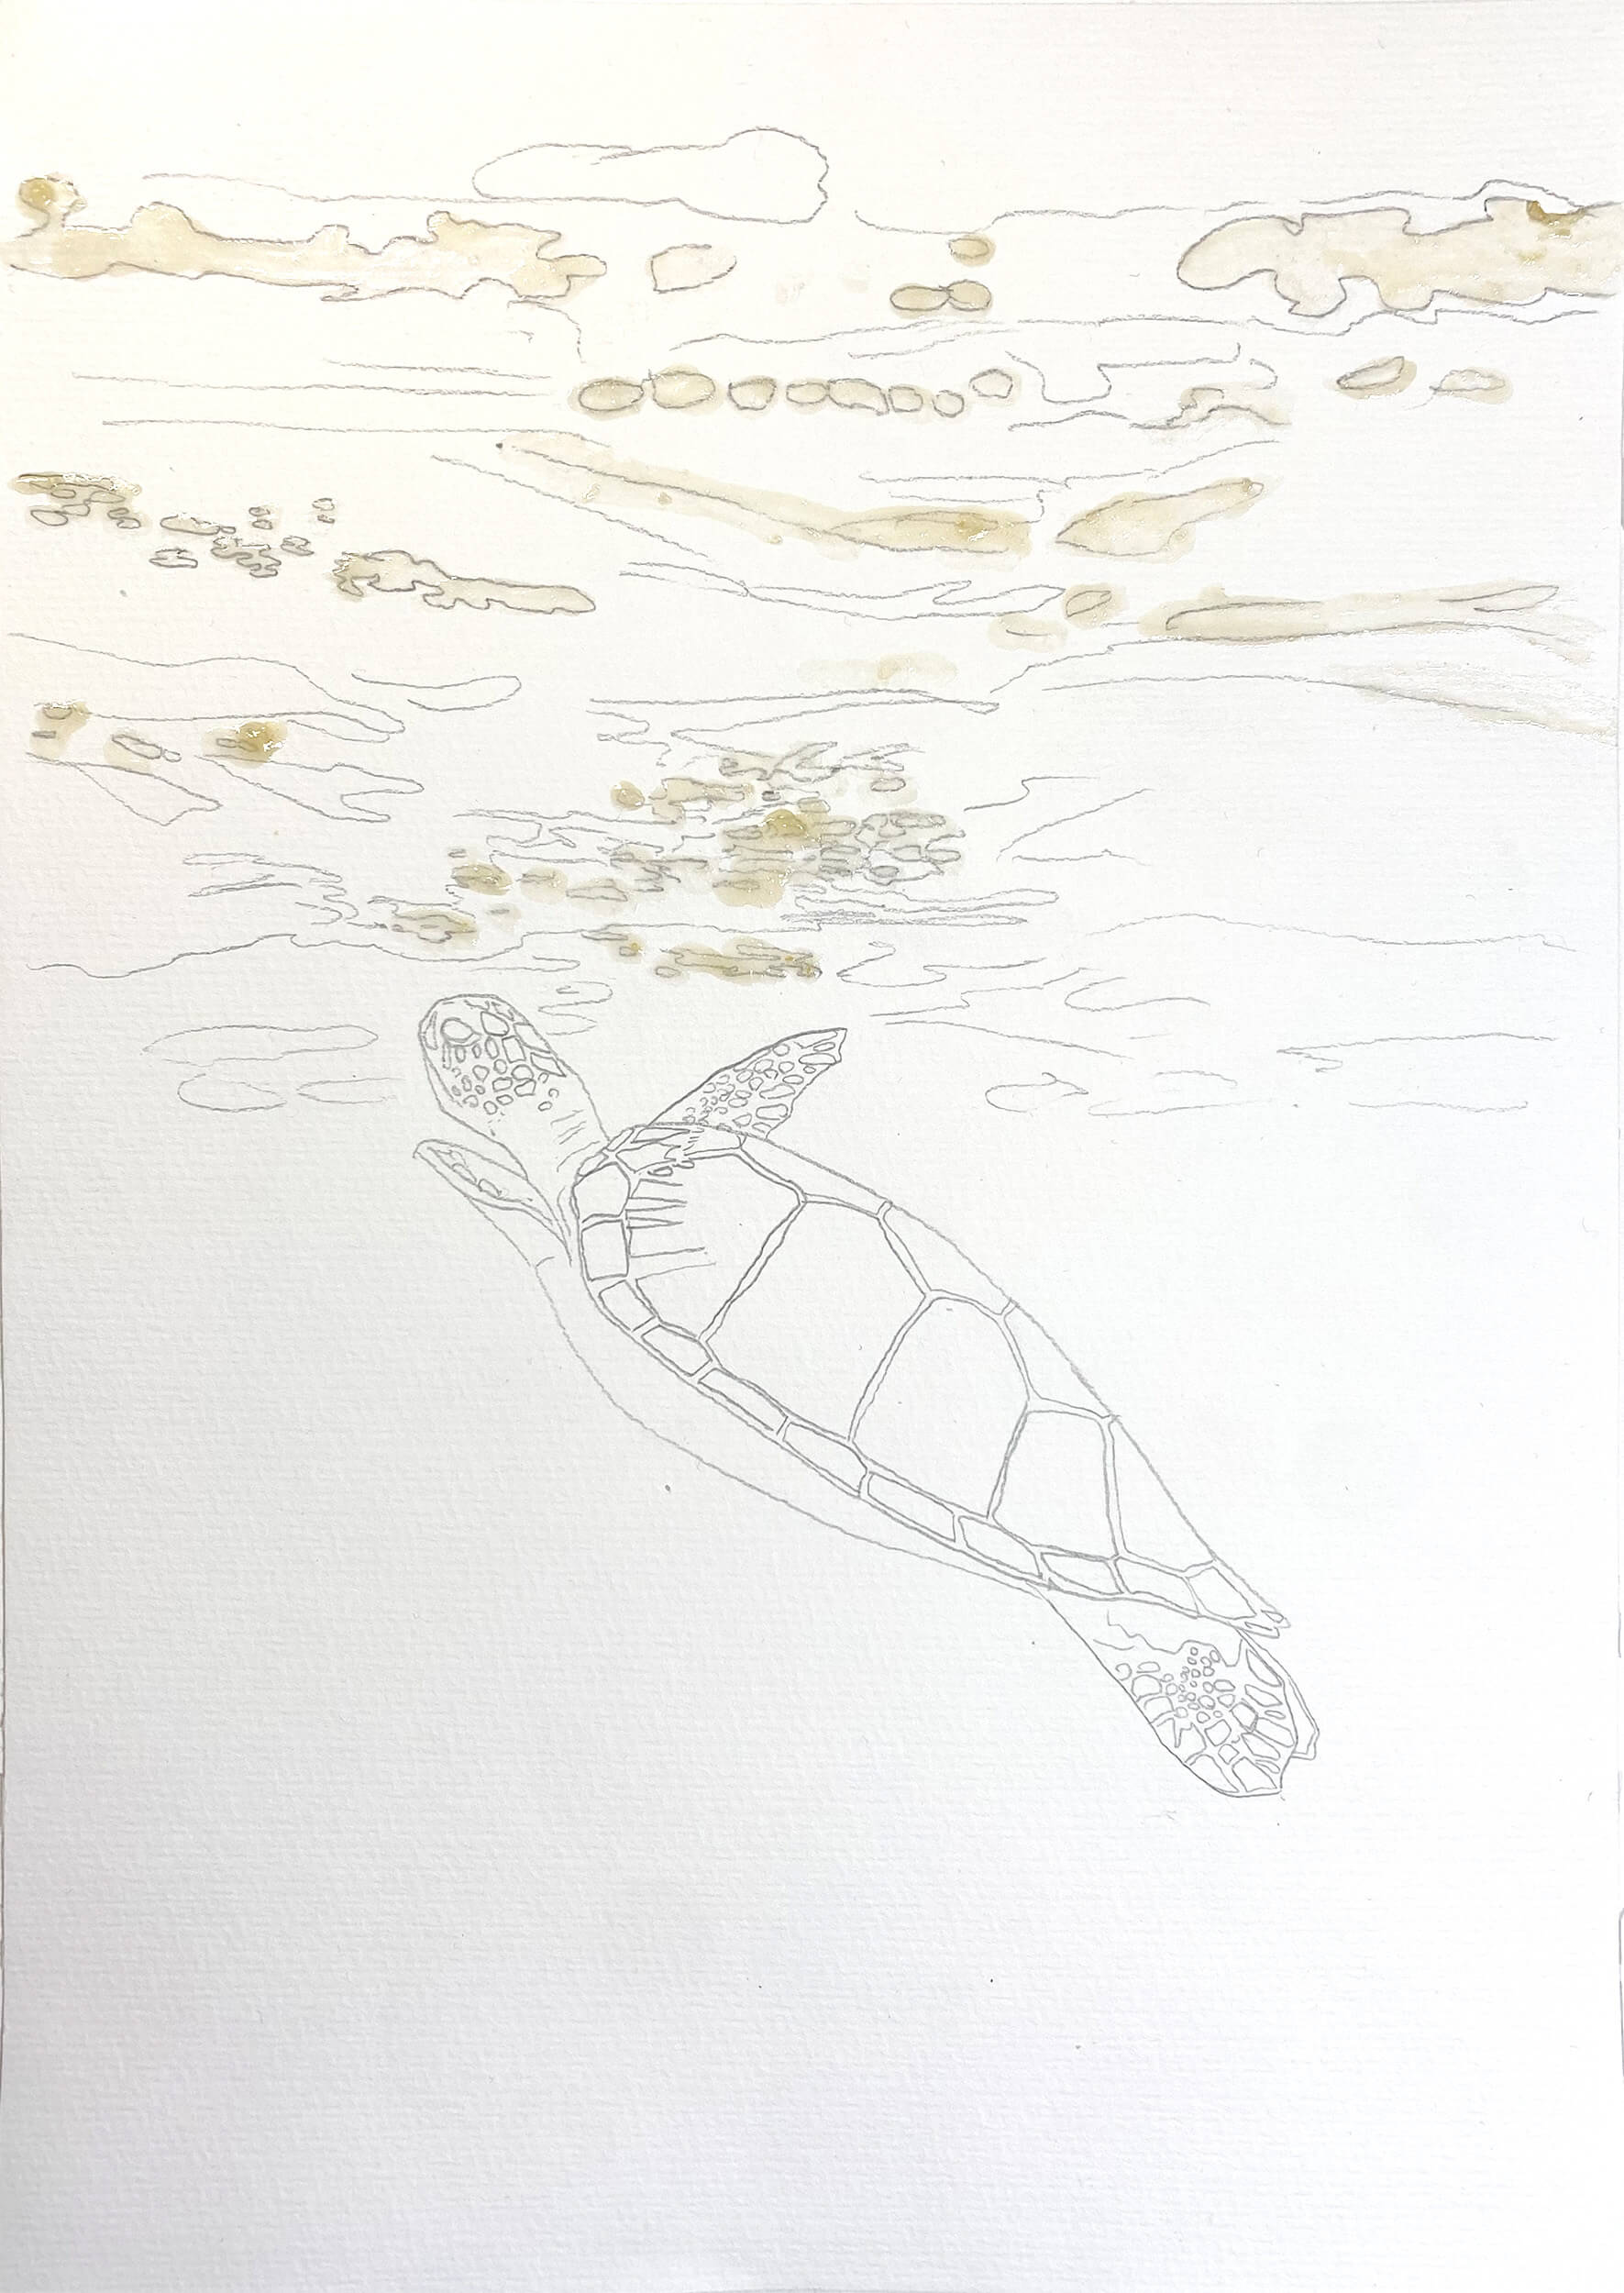 Bleistiftskizze Meeresschildkröte mit Rubbelkrepp